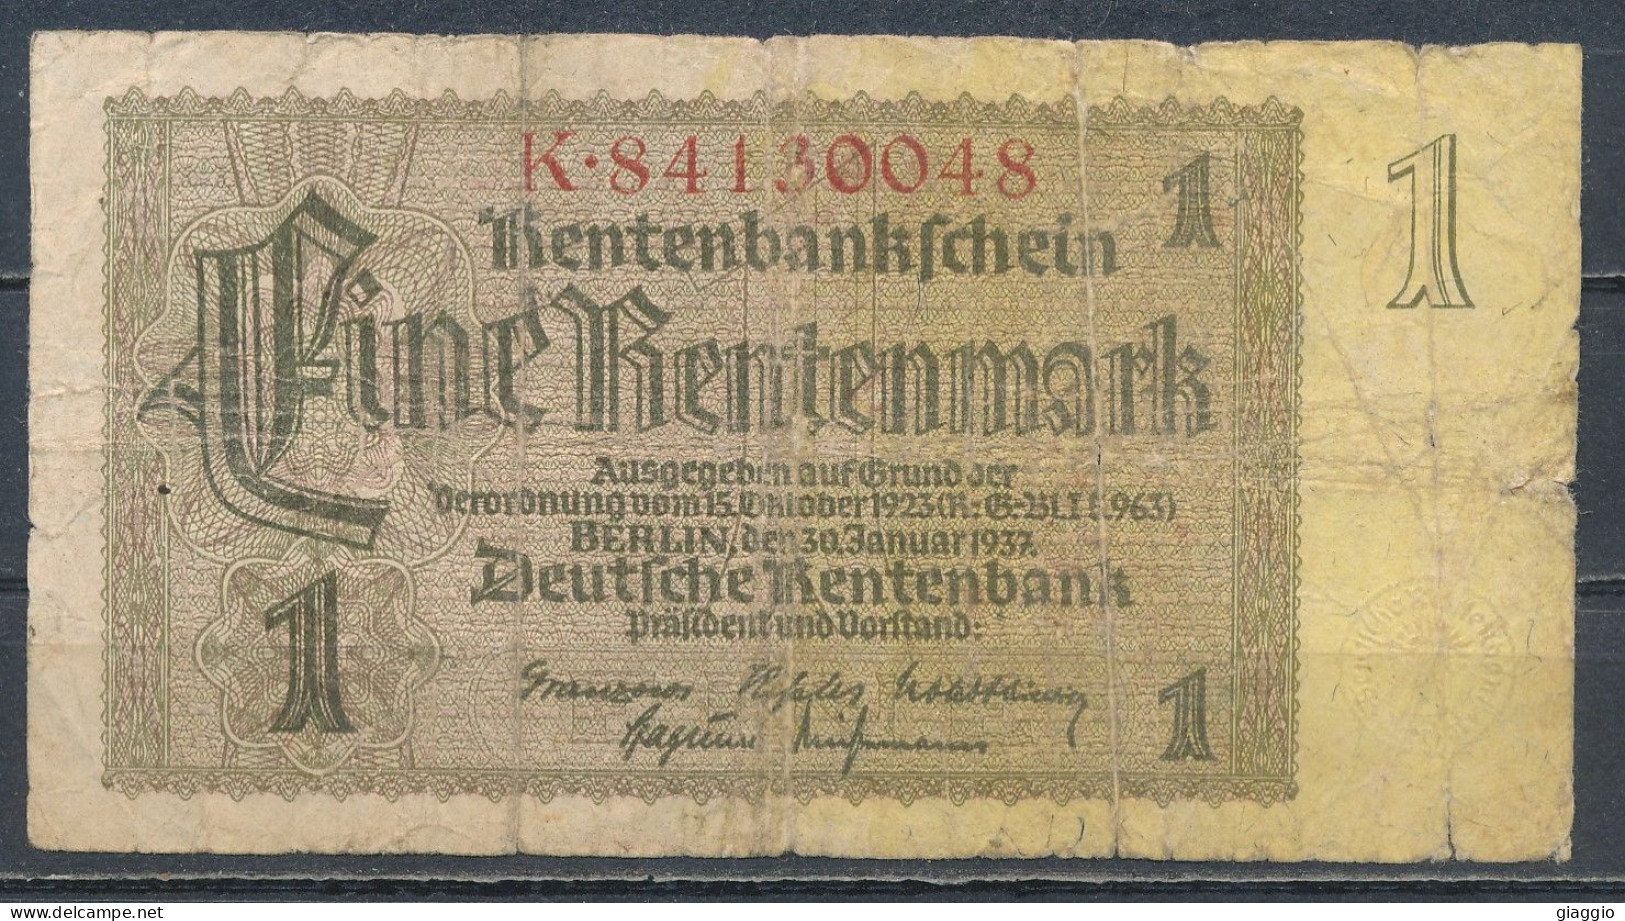 °°° GERMANY - 1 RENTENMARK 1937 SERIE K °°° - 1 Rentenmark